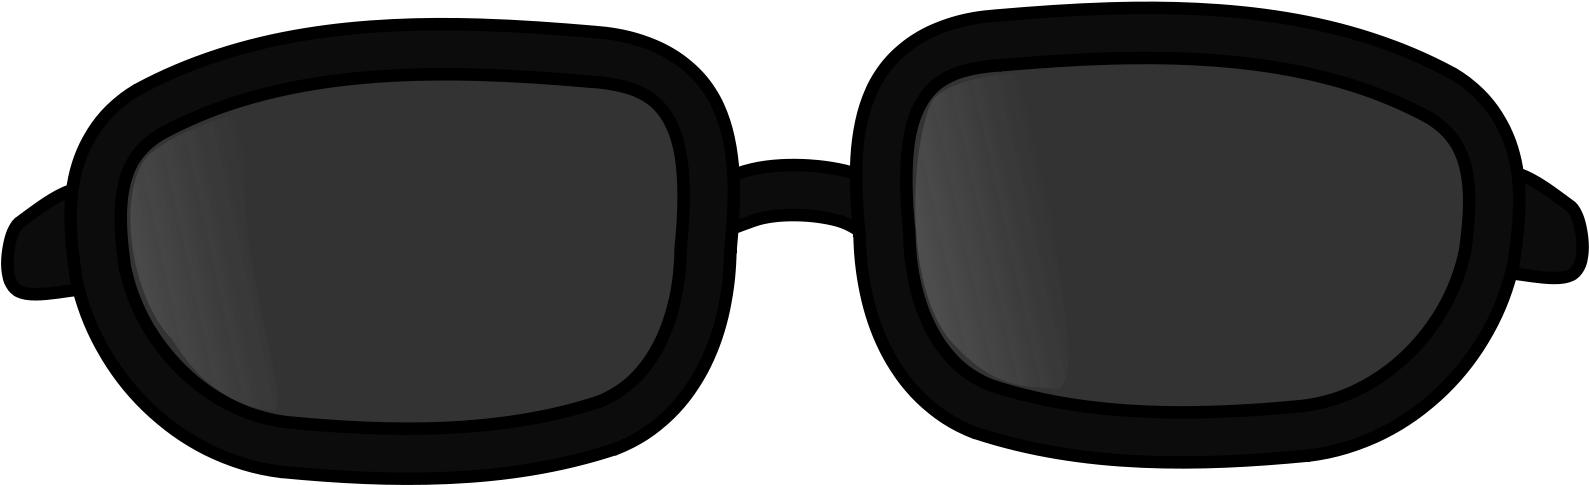 2000 X 2000 1 - Sunglasses Clip Art - Png Download (2000x2000), Png Download